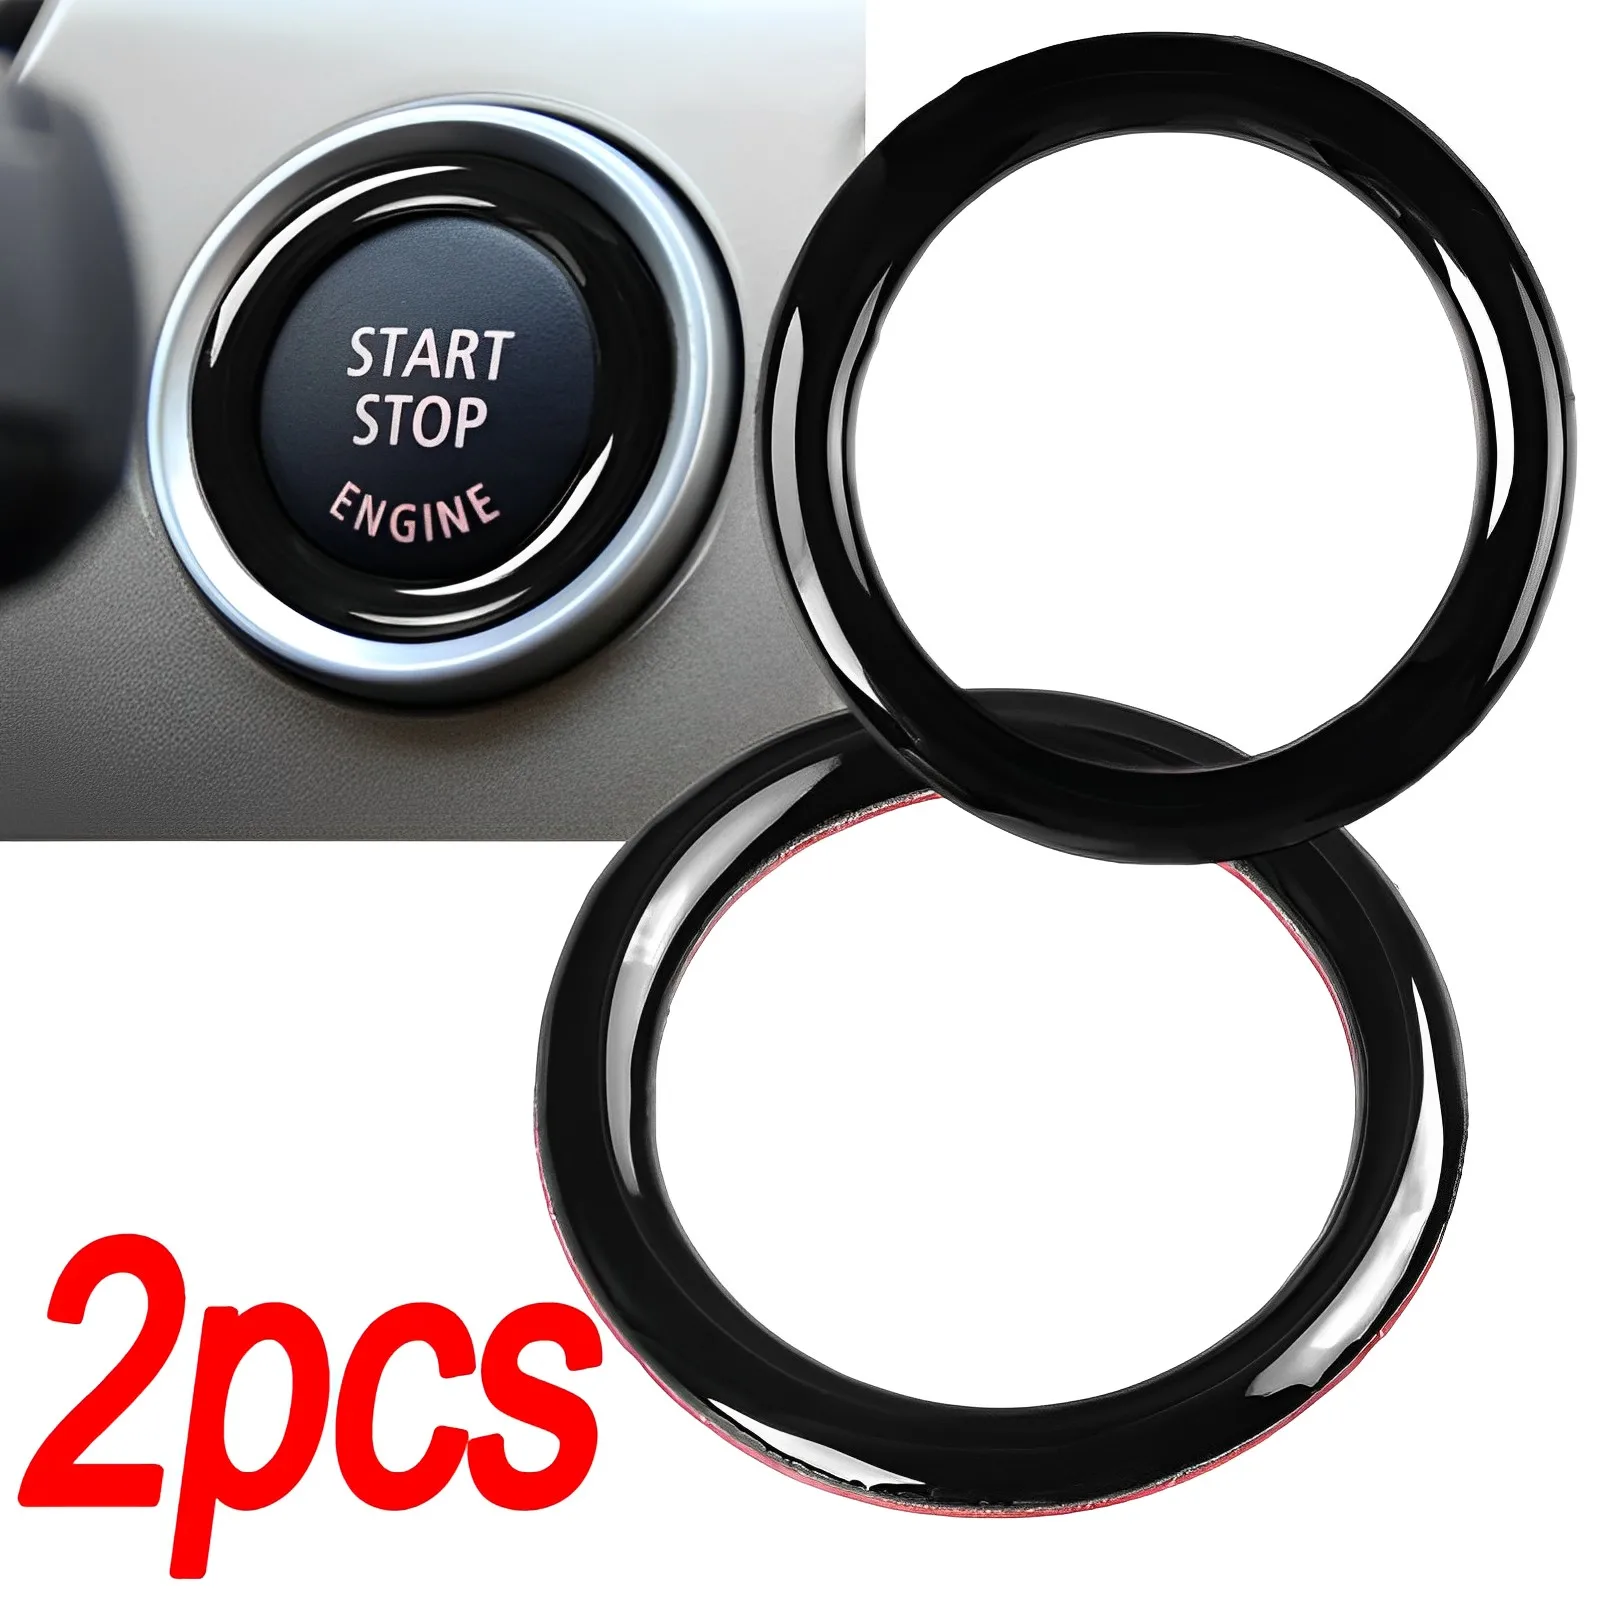 

1/2pcs Car Engine One Start Stop Push Button Ignition Key Circle Sticker Trim Decal for BMW 3 Series E90 E92 E93 320i Z4 E89